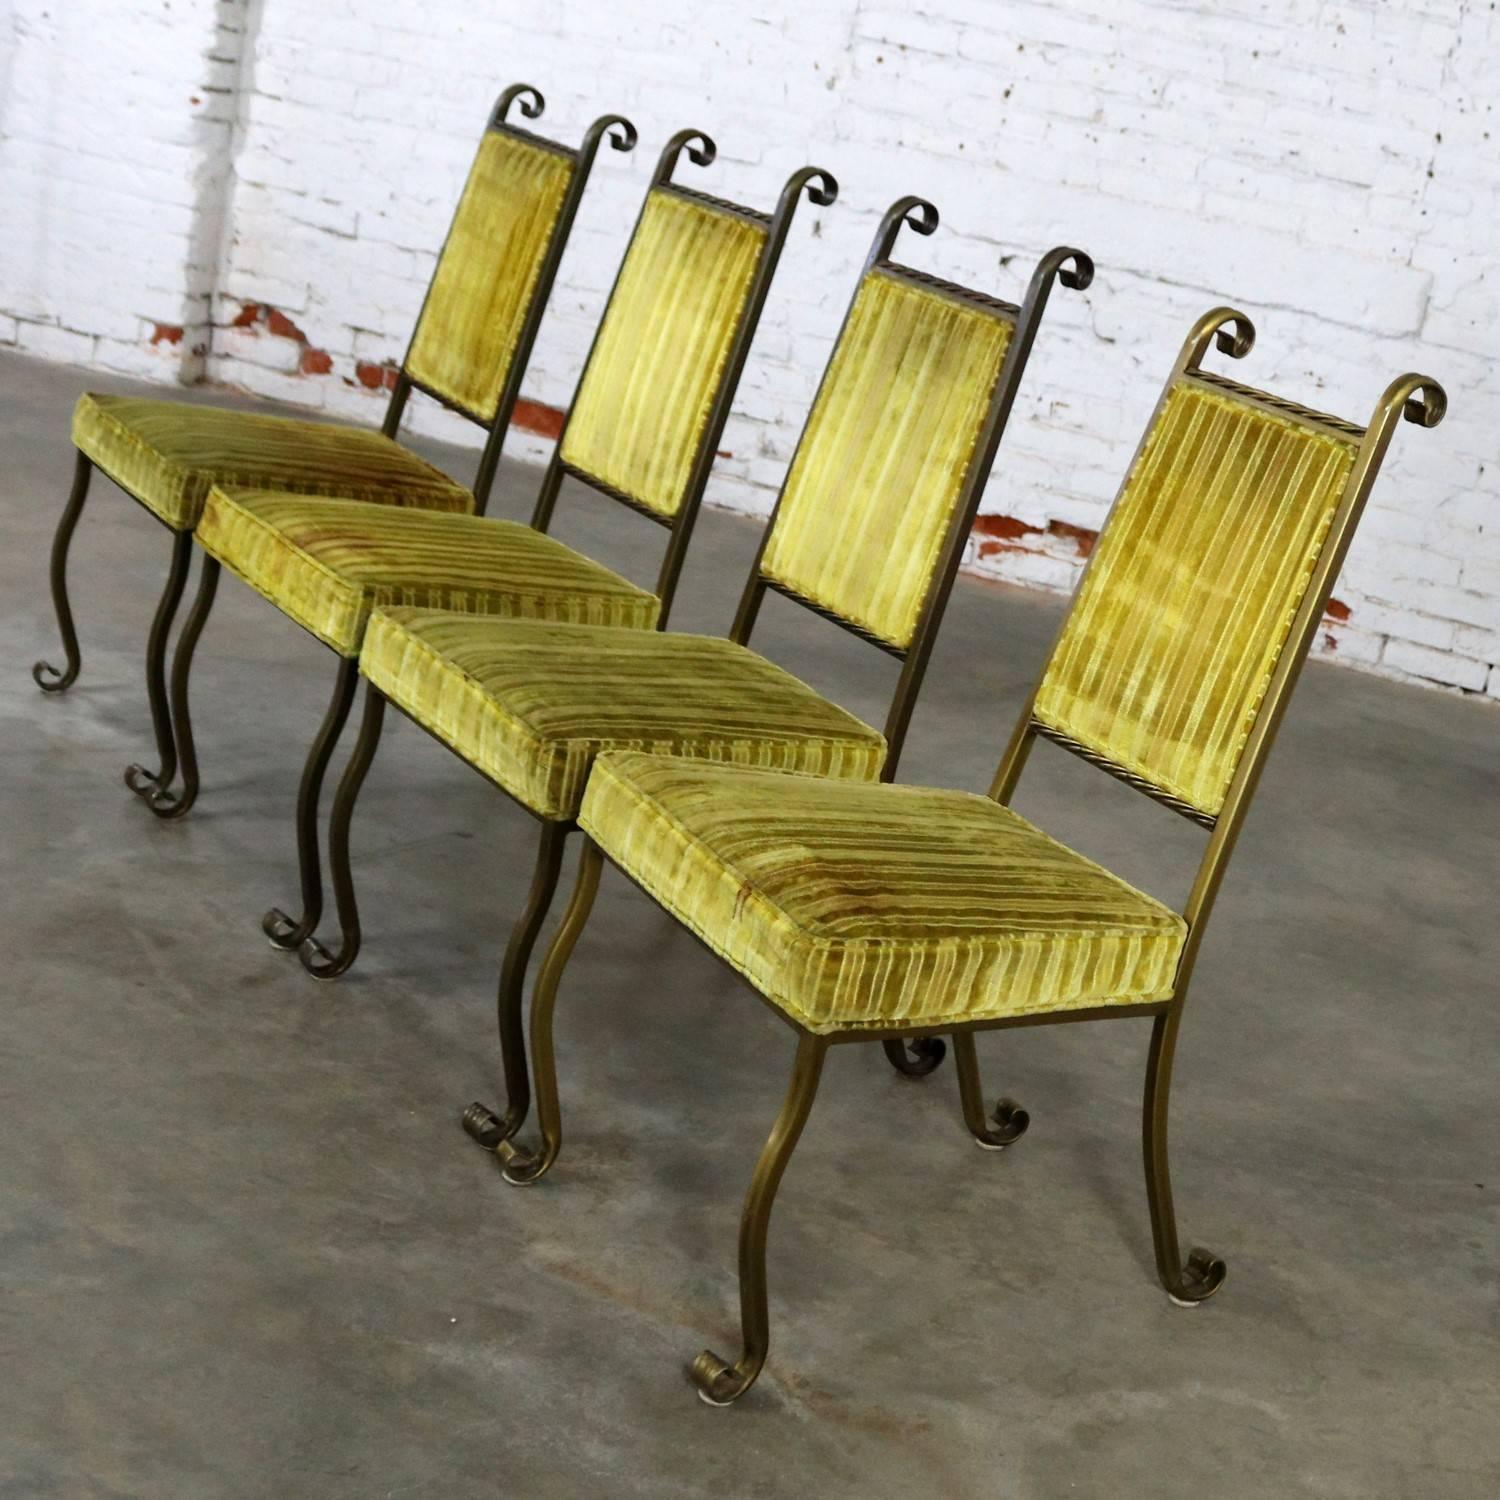 Bel ensemble de quatre chaises de salle à manger en fer forgé et rembourrées dans un style Hollywood Regency par Swirl Craft de Sun Valley, Californie. Cet ensemble est en très bon état vintage, avec sa finition et son rembourrage d'origine.